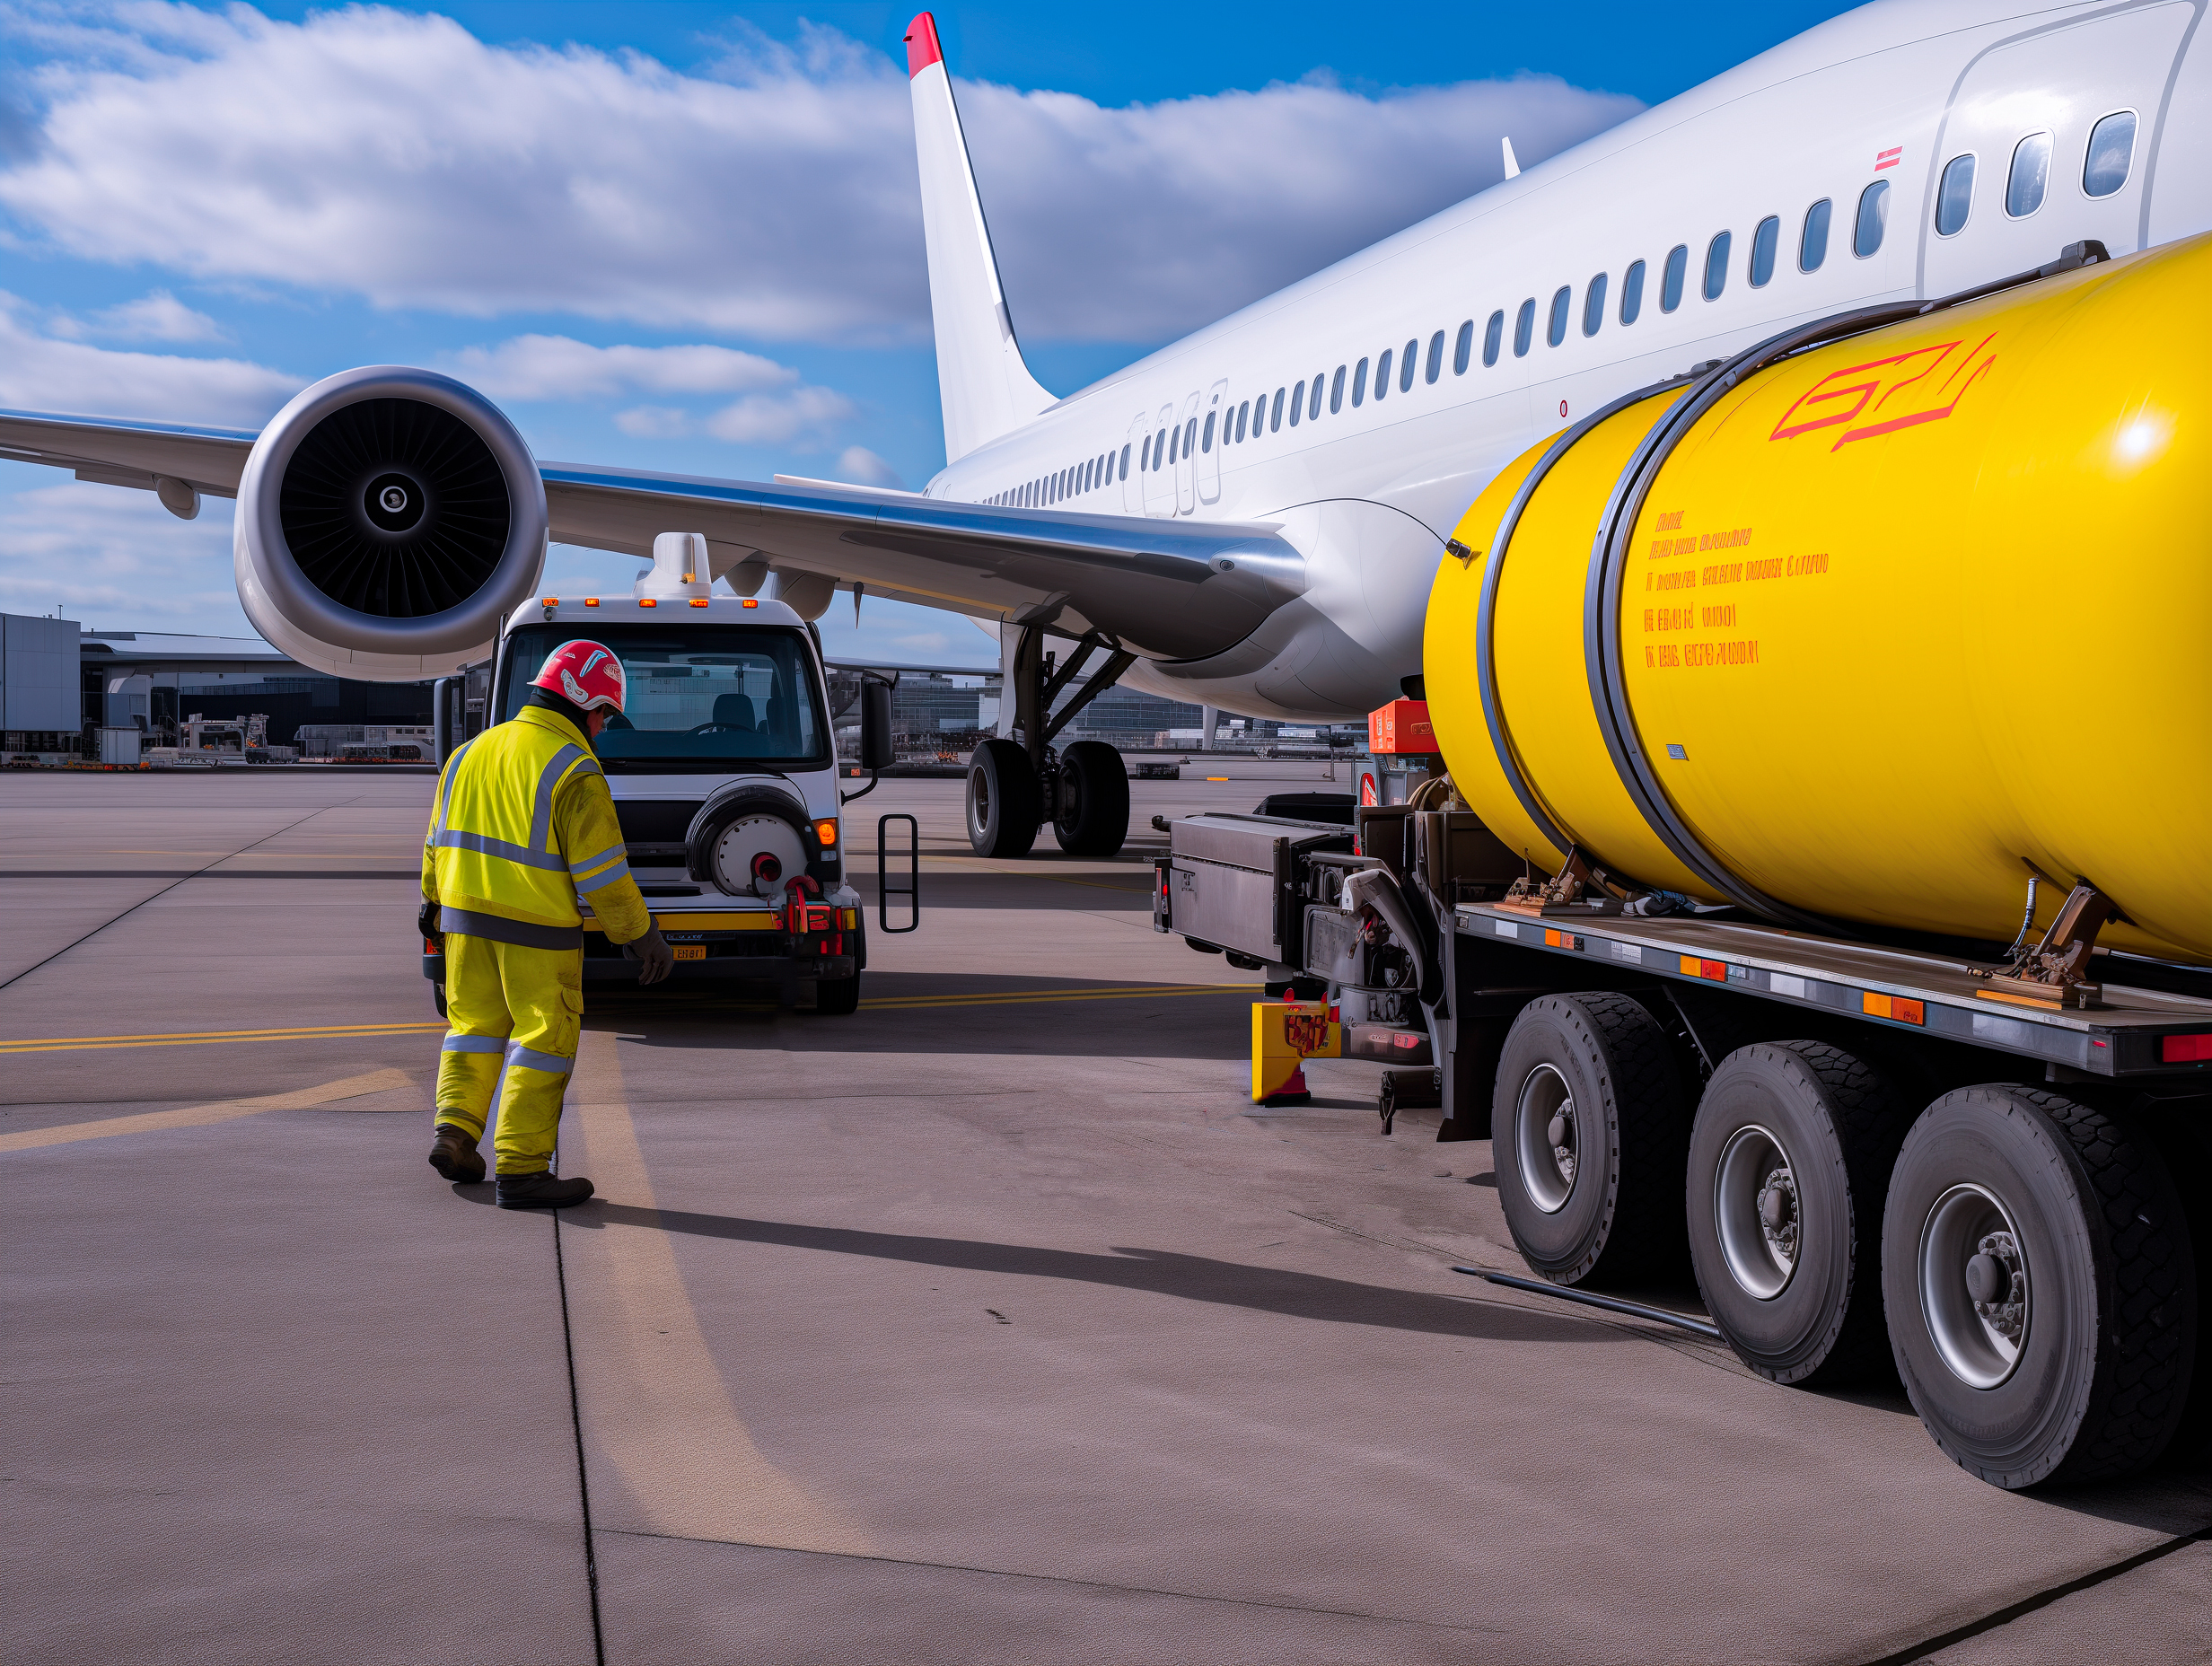 Divulgação do curso online Introdução aos Combustíveis e Sistemas de Combustível de Aeronaves com imagem de uma aeronave branca sendo abastecida no aeroporto